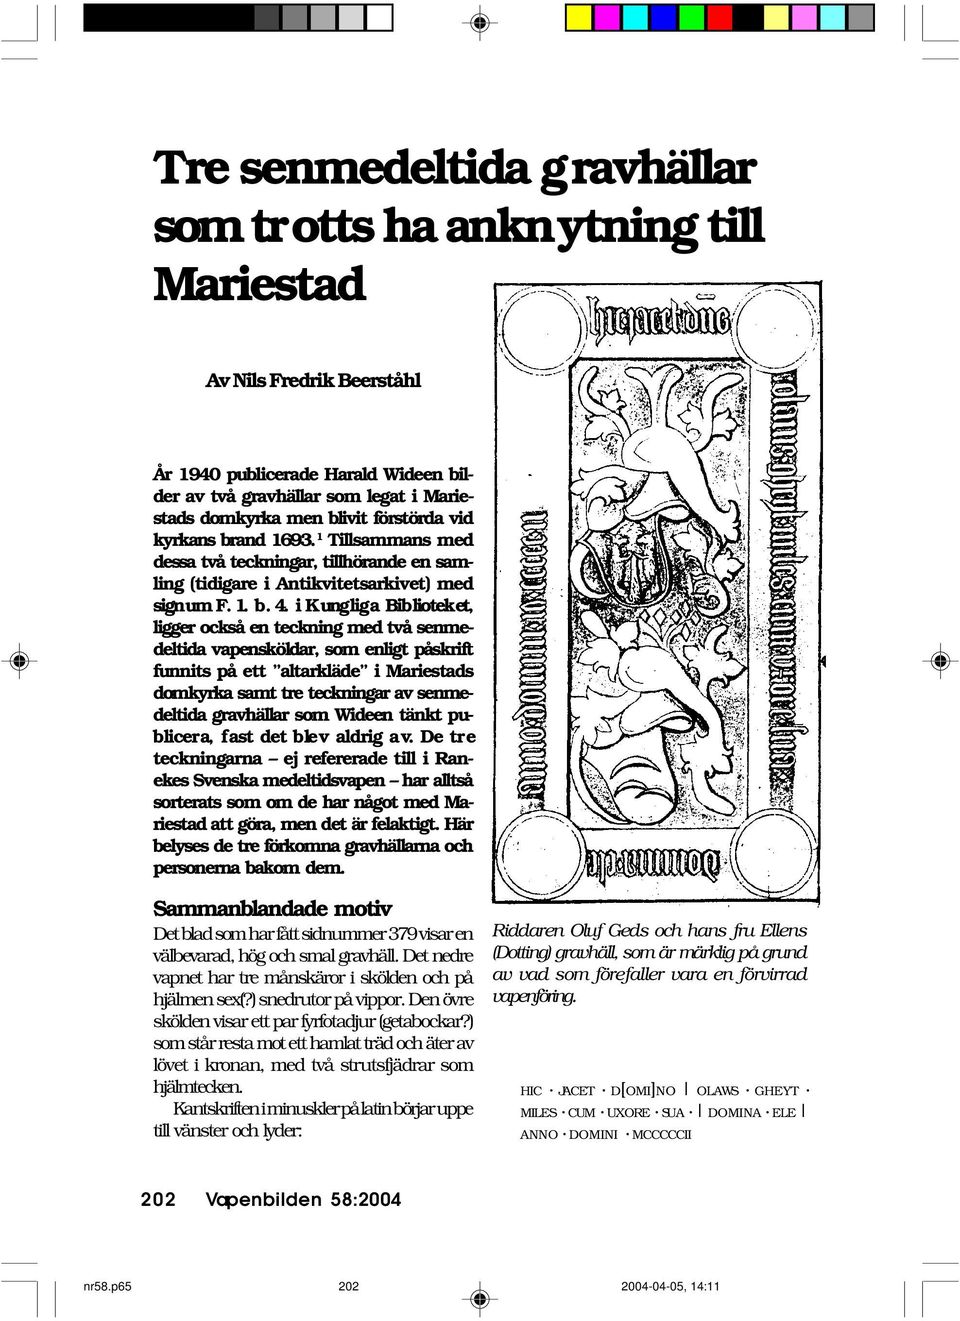 i Kungliga Biblioteket, ligger också en teckning med två senmedeltida vapensköldar, som enligt påskrift funnits på ett altarkläde i Mariestads domkyrka samt tre teckningar av senmedeltida gravhällar